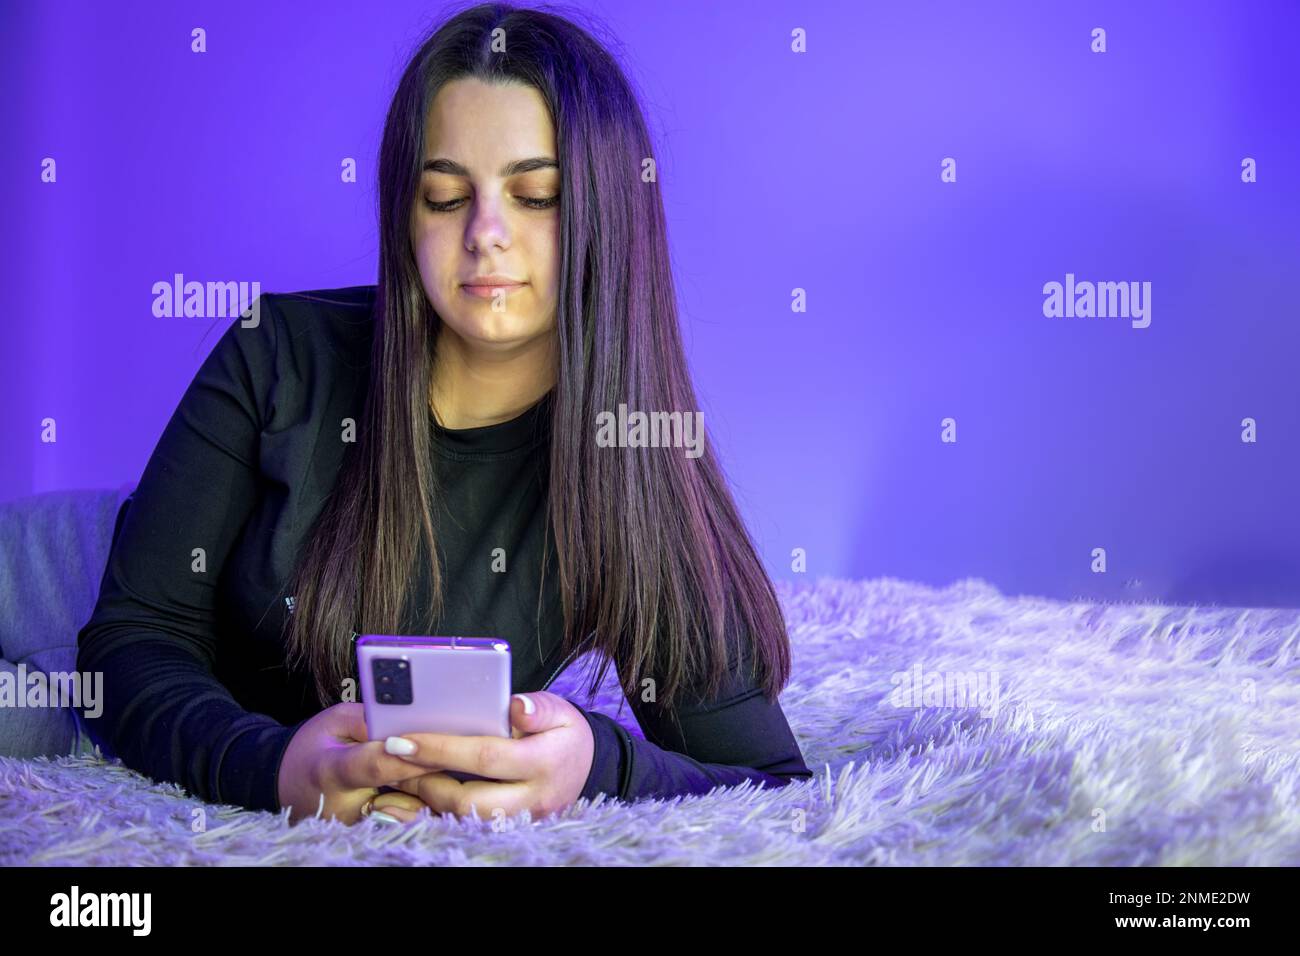 Una bella ragazza è sdraiata sul letto con un telefono cellulare. Foto Stock